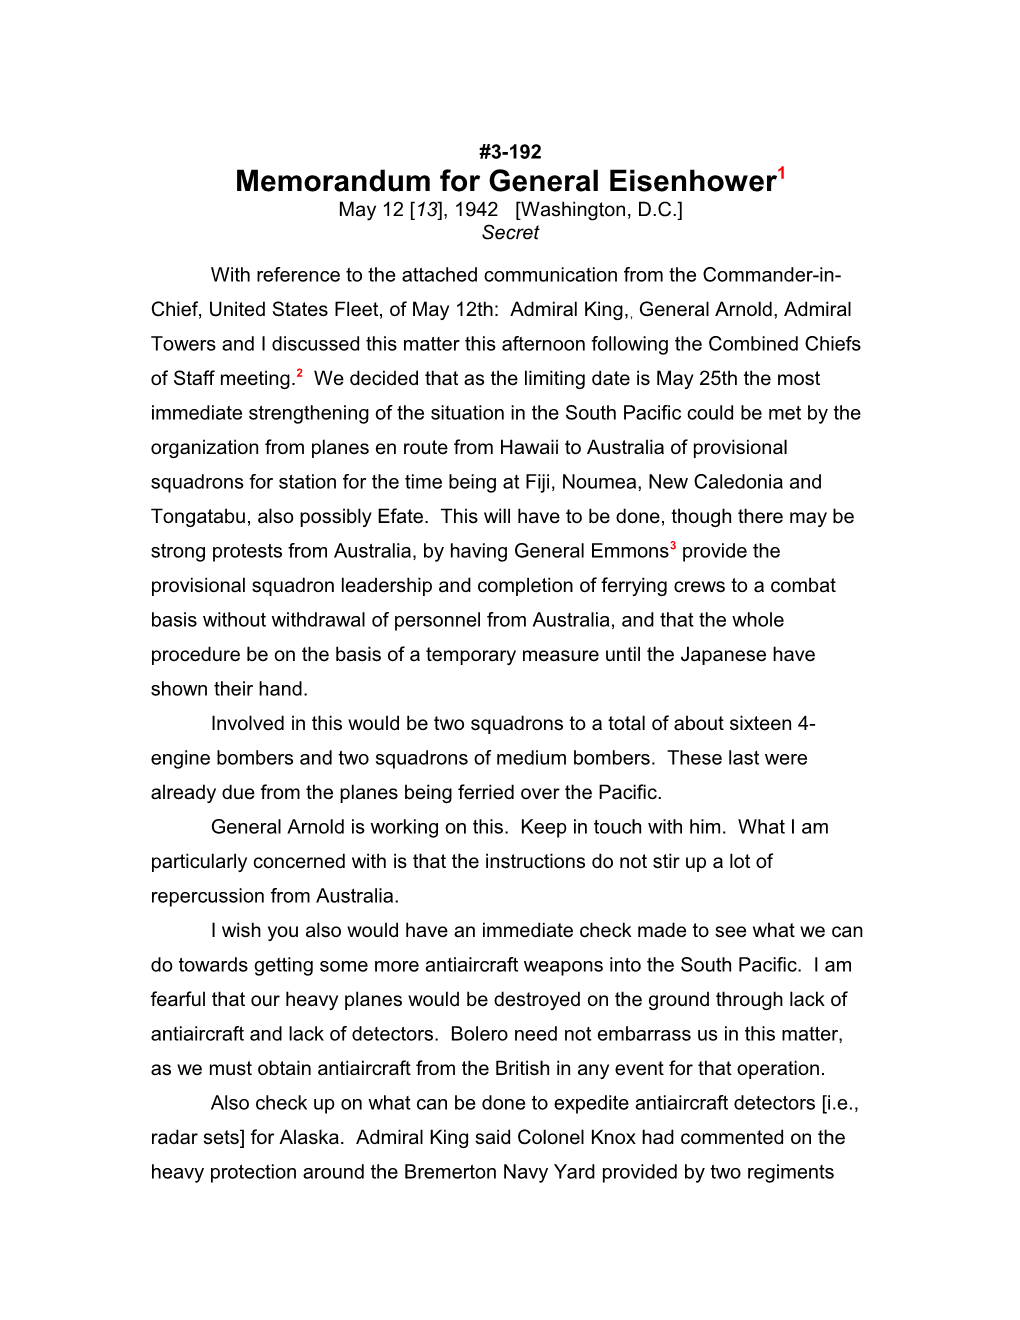 Memorandum for General Eisenhower1